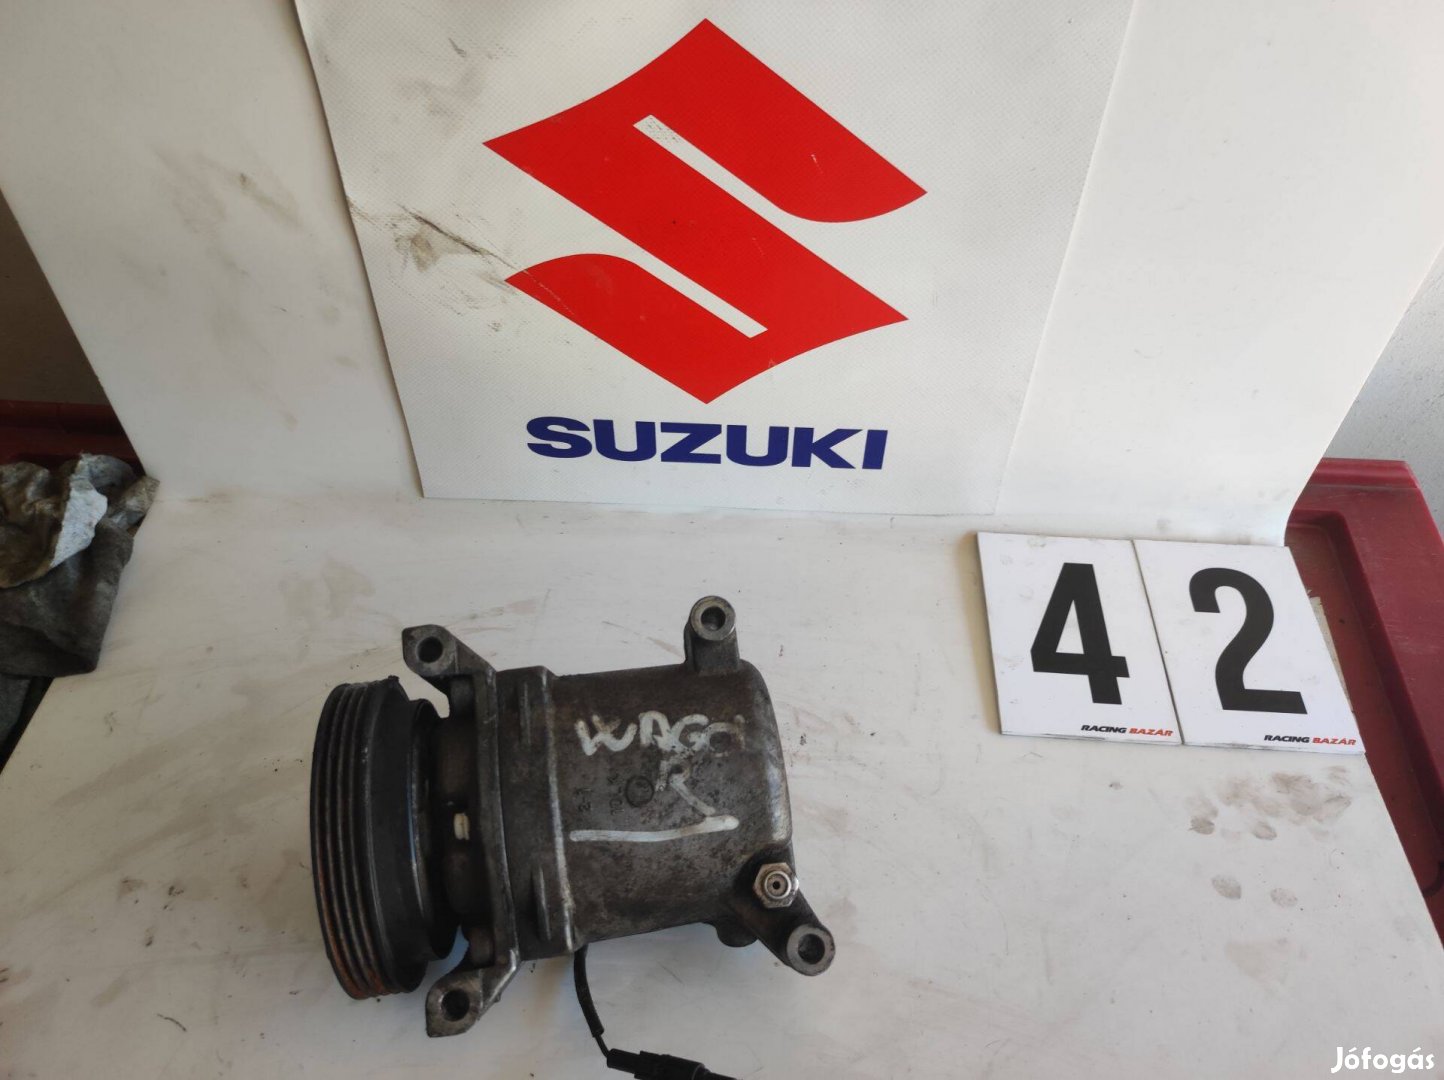 Suzuki wagonr wagon klíma kompresszor